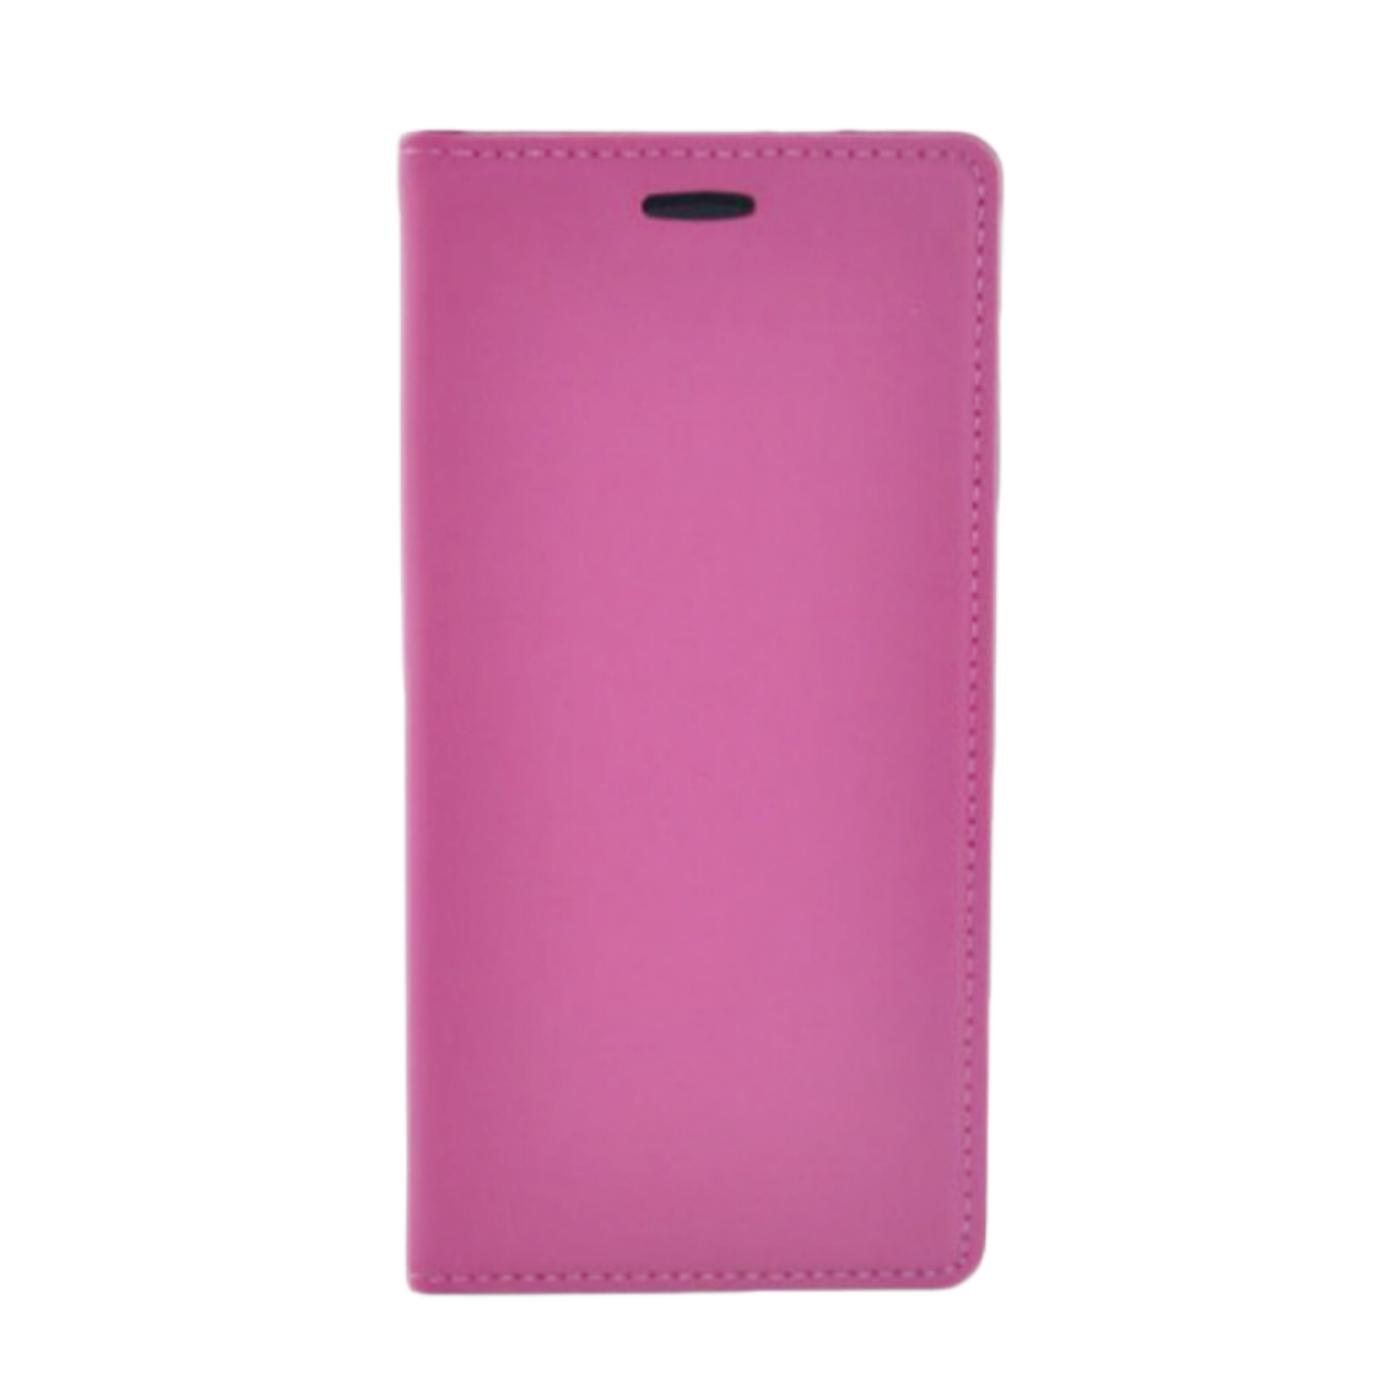 Futrola za mobitel Samsung S7, pink